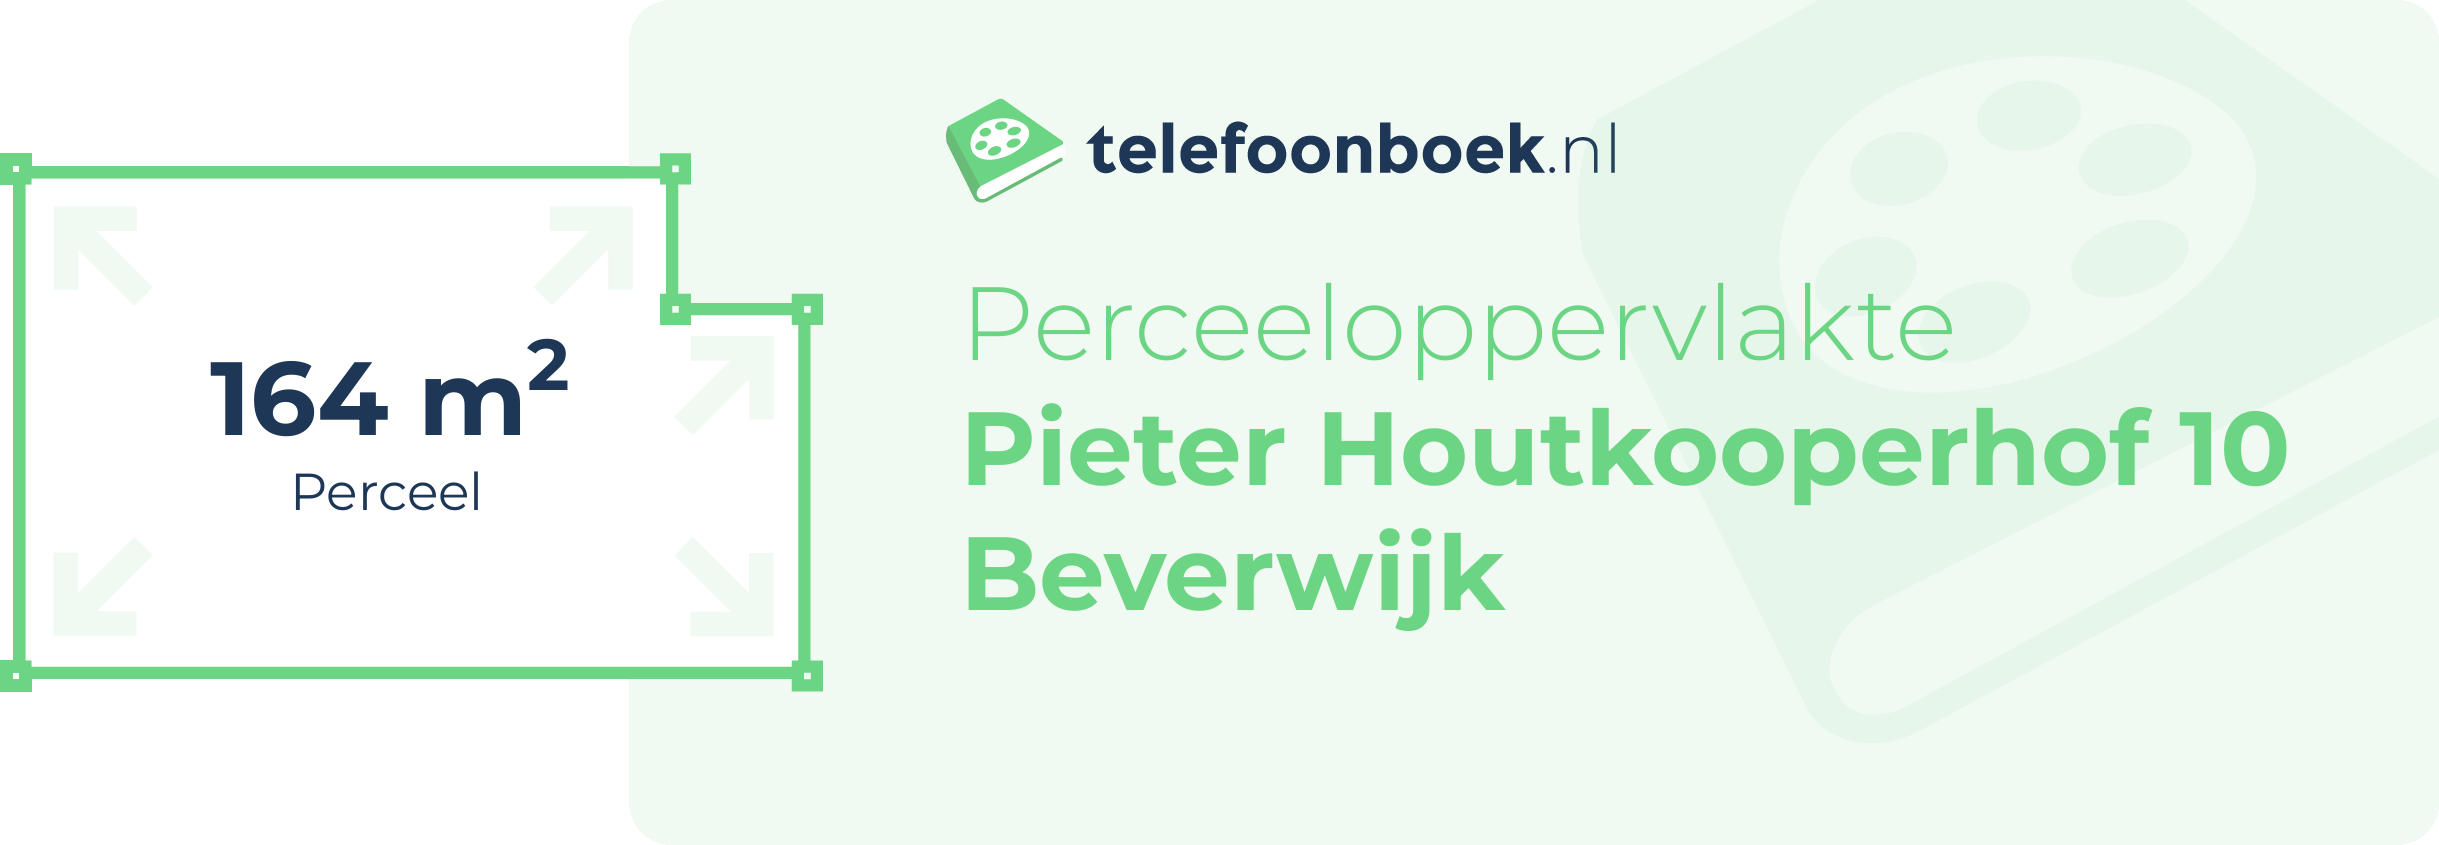 Perceeloppervlakte Pieter Houtkooperhof 10 Beverwijk